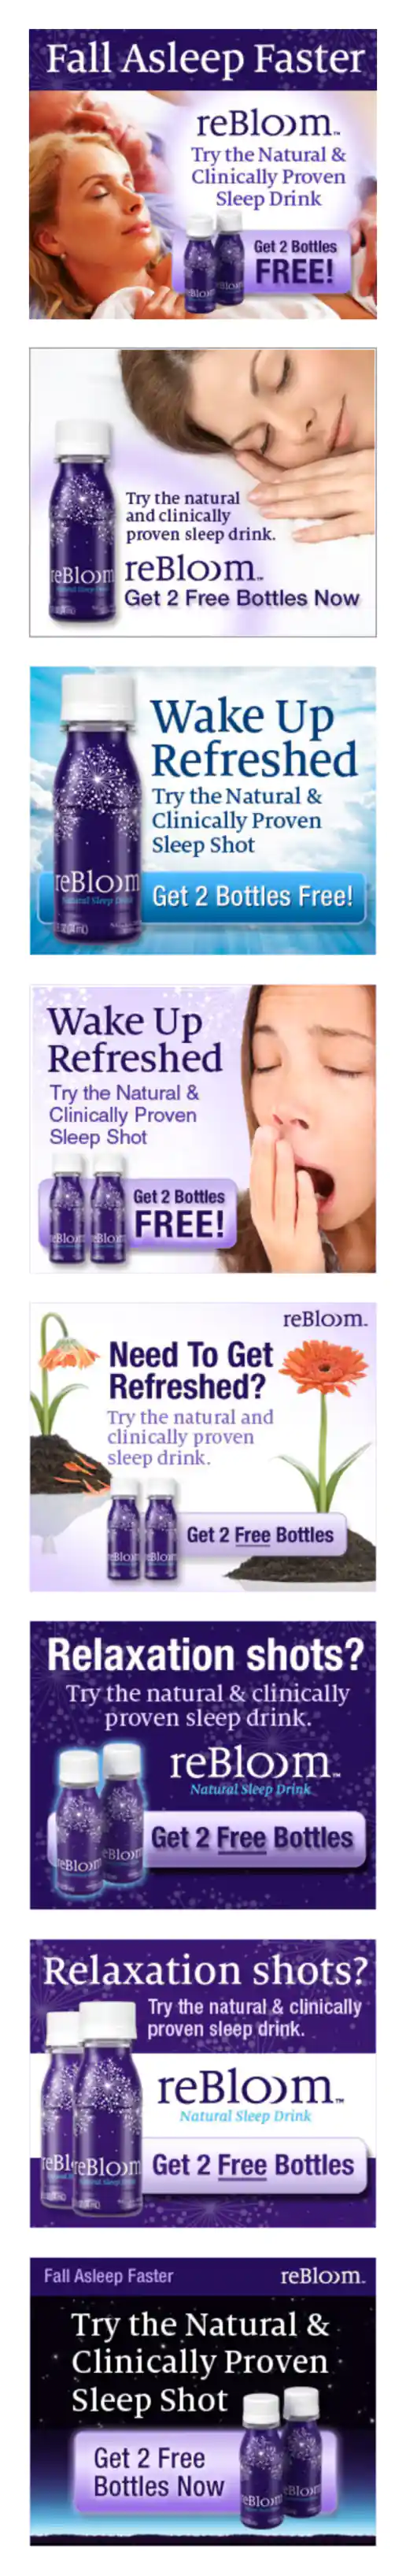 Rebloom.com Banner Ads – 8 Versions